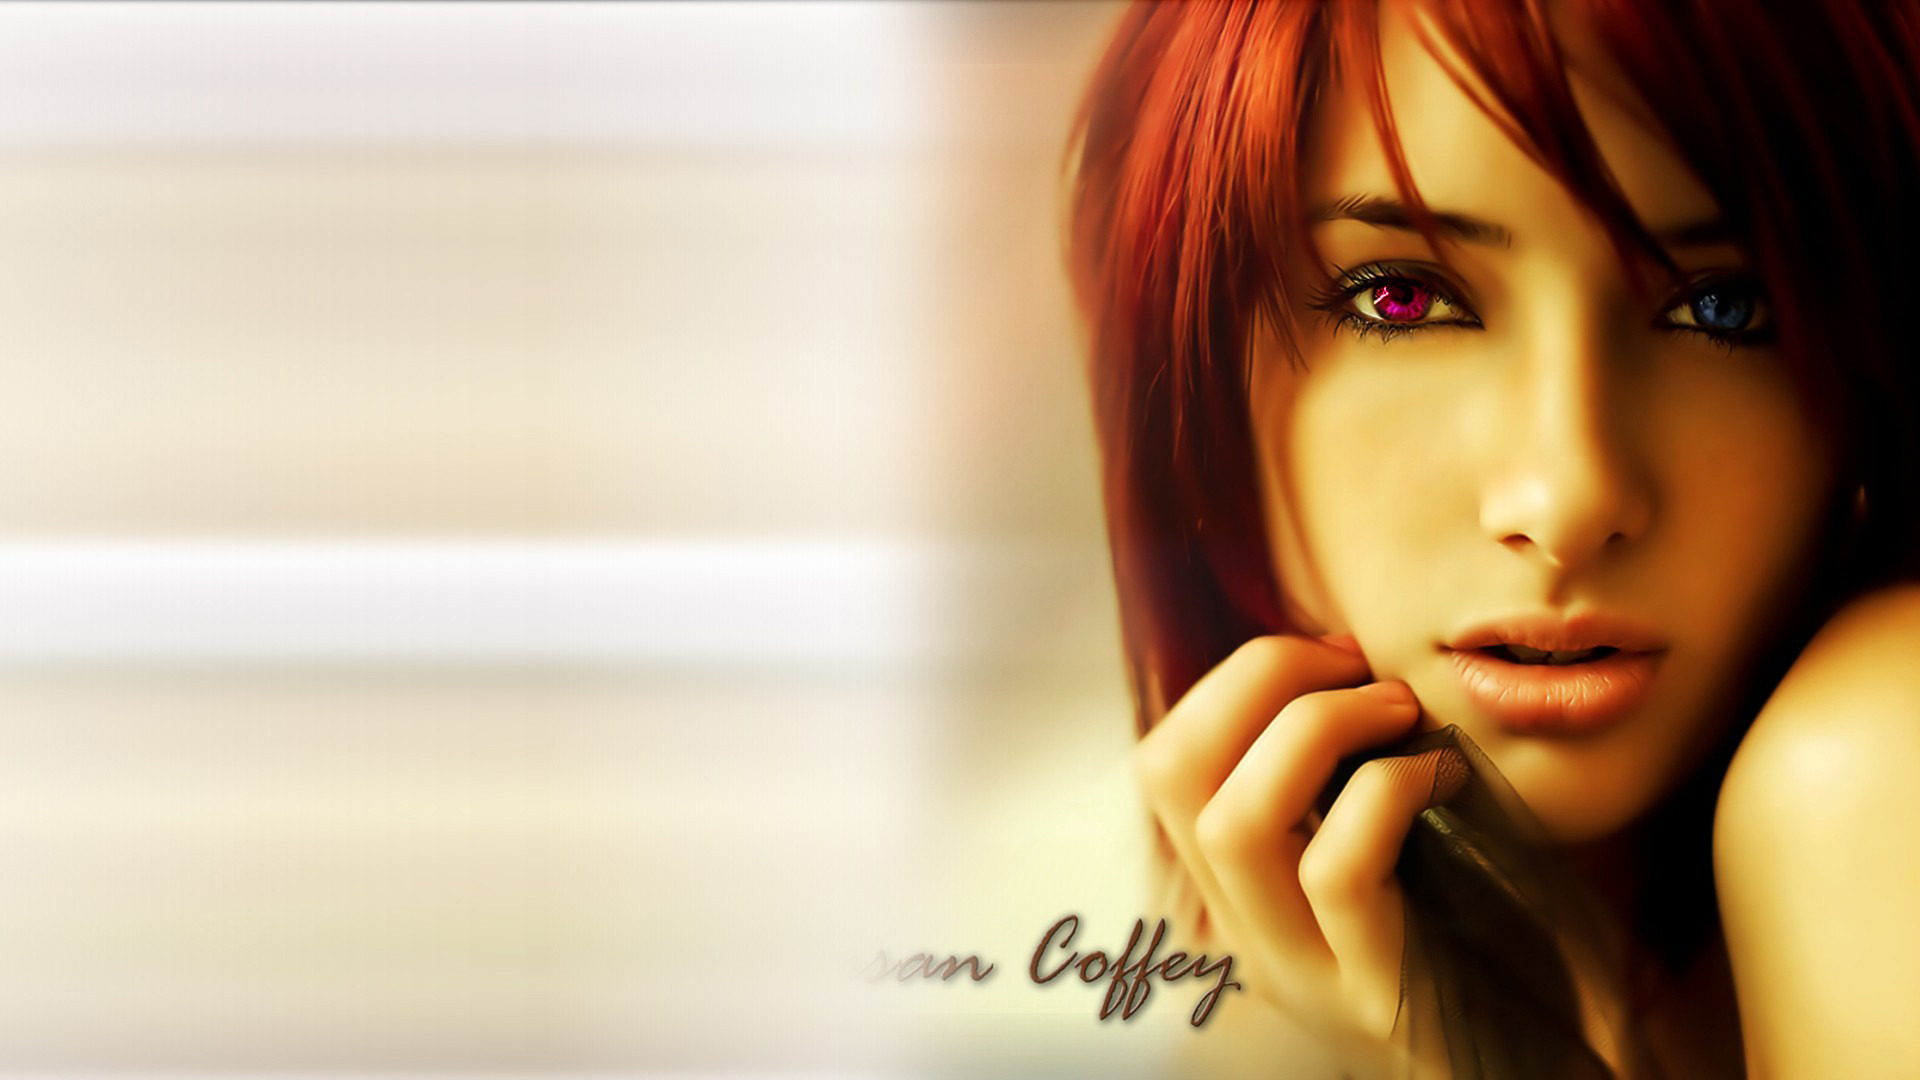 Susan Coffey, Model, CGI, Redhead, Blue Eyes, Red Eyes Wallpaper